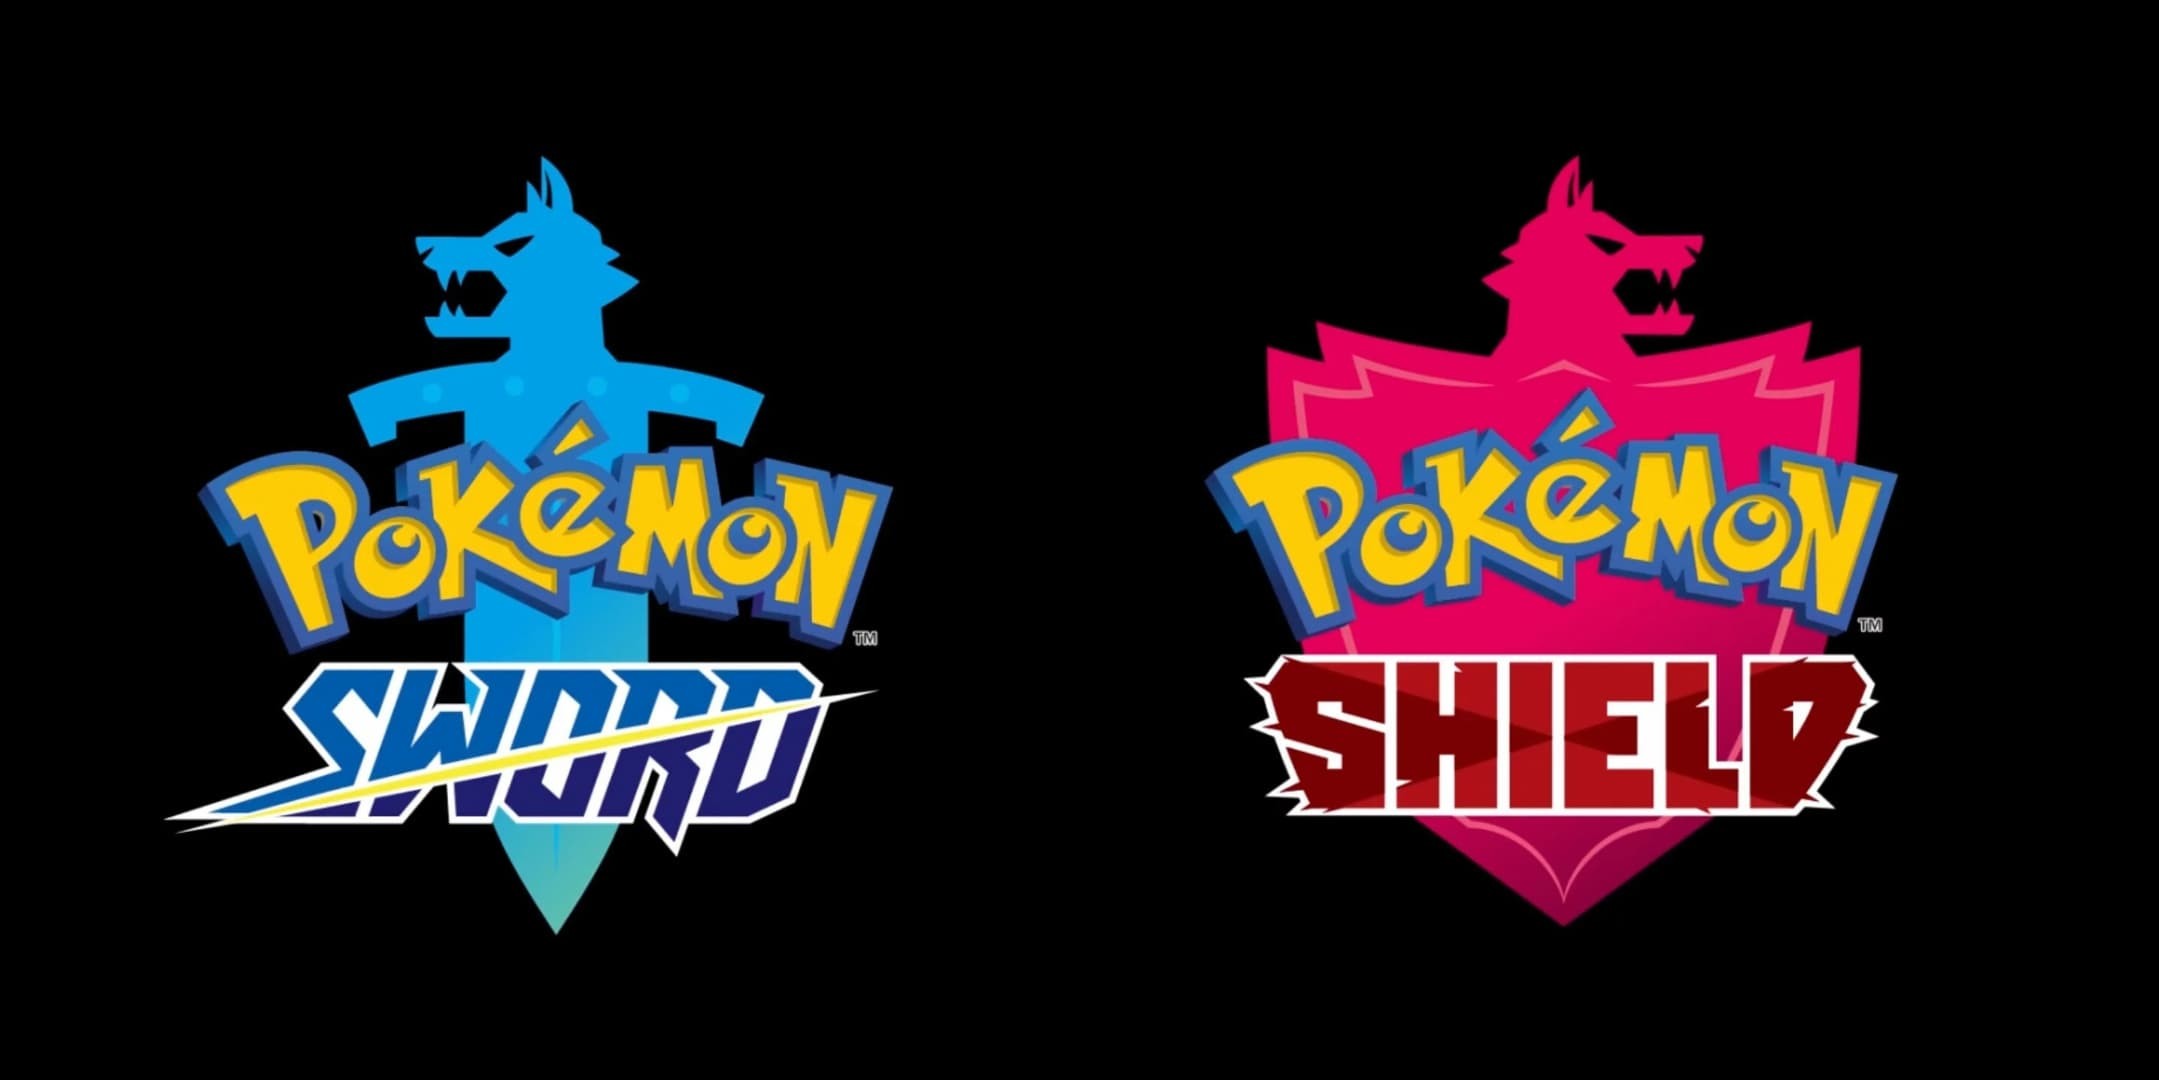 Pokémon Spada e Pokémon Scudo annuncio